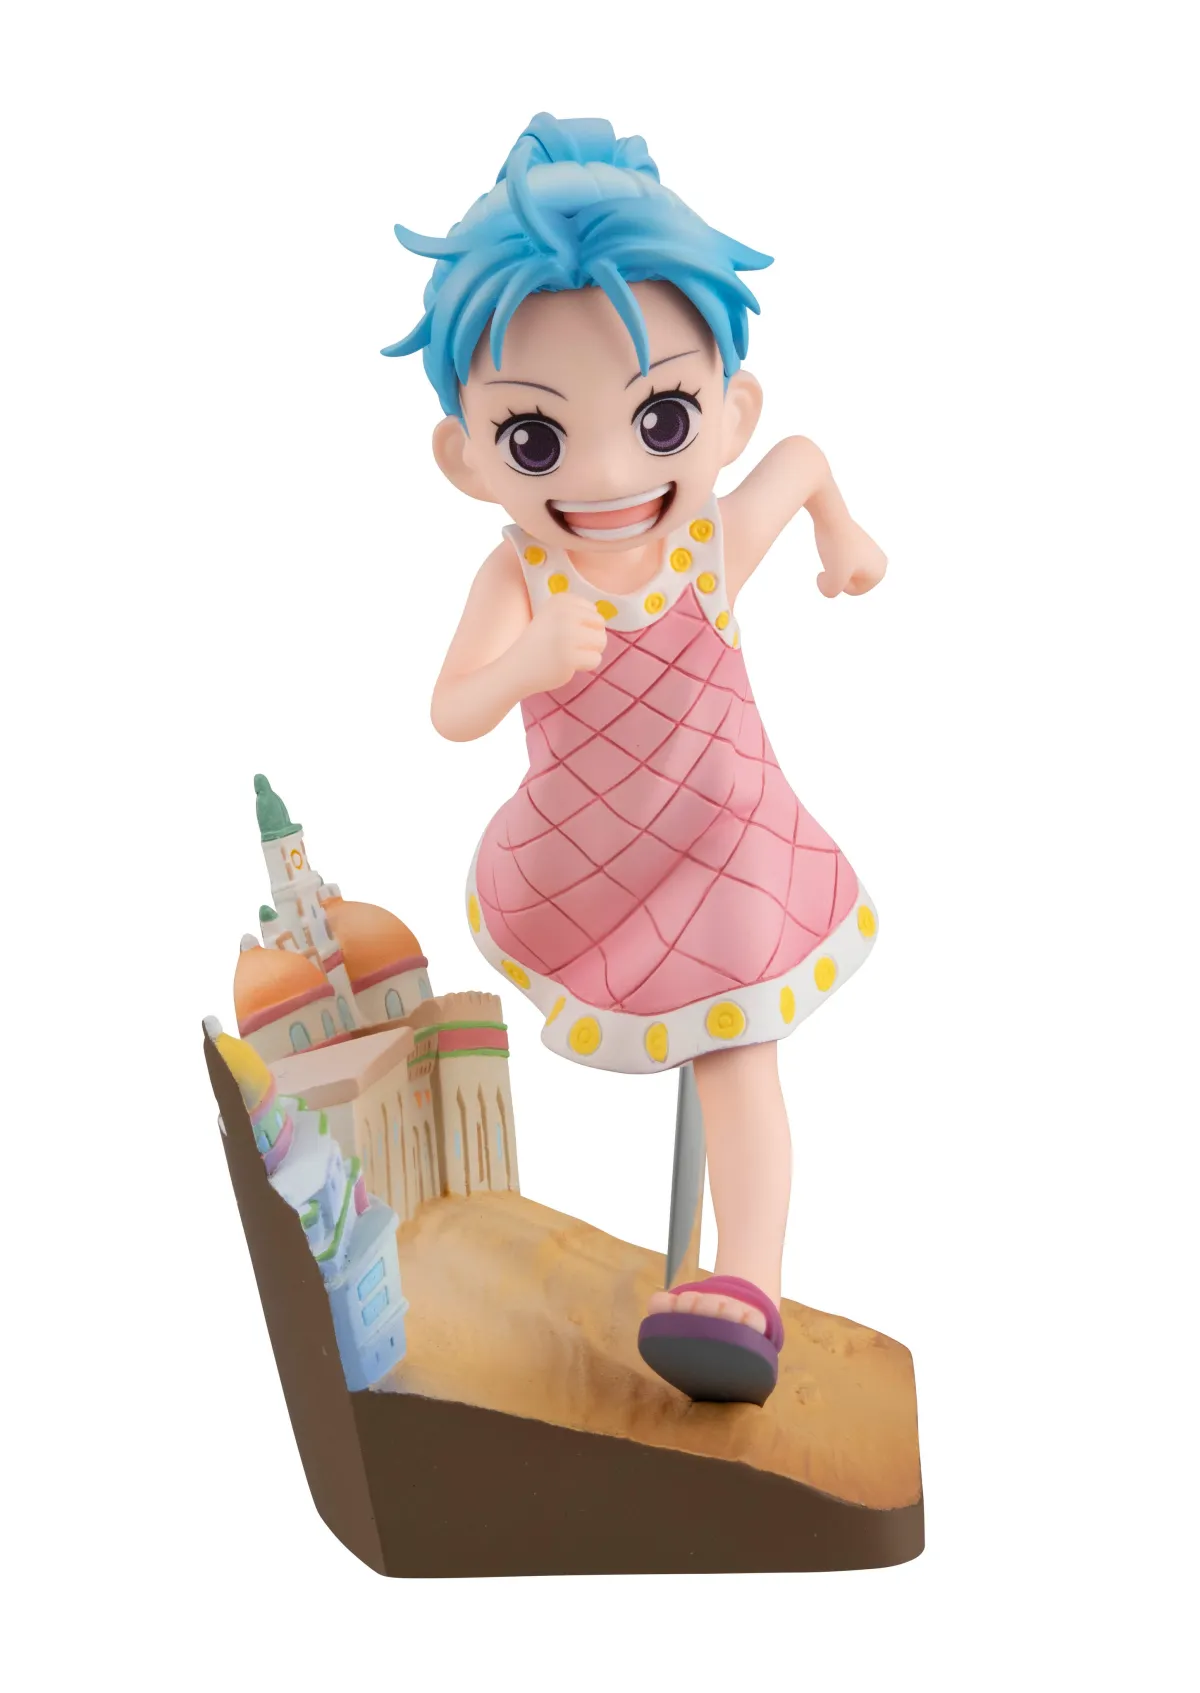 Nefertari Vivi devient une enfant pour la figurine One Piece RunRunRun